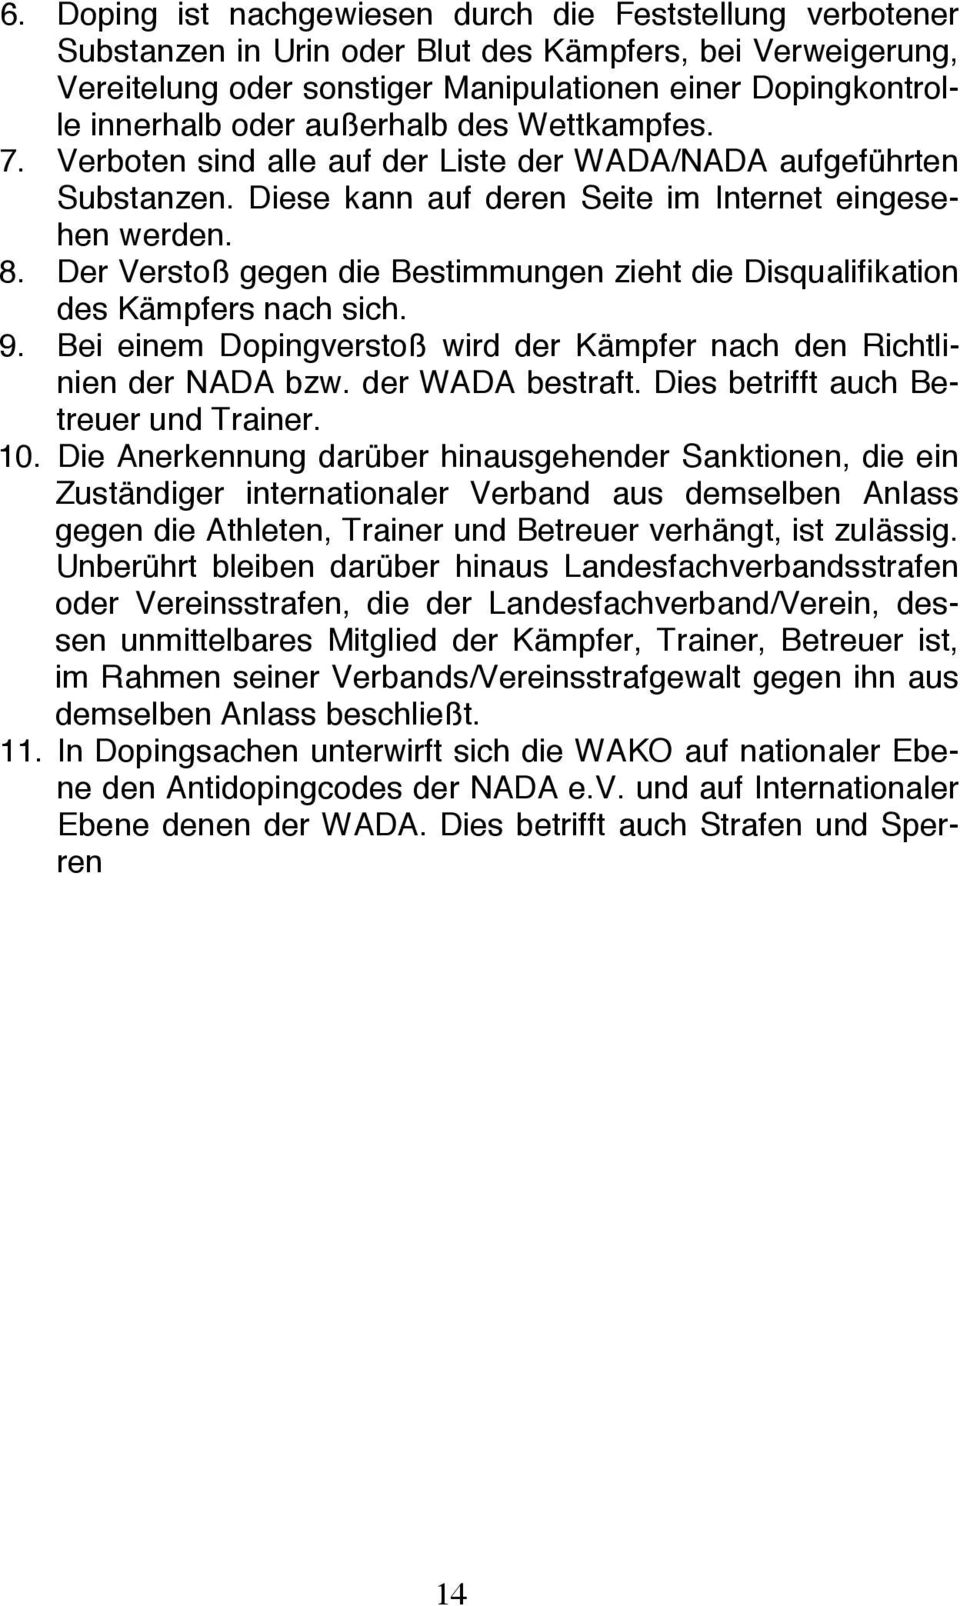 Der Verstoß gegen die Bestimmungen zieht die Disqualifikation des Kämpfers nach sich. 9. Bei einem Dopingverstoß wird der Kämpfer nach den Richtlinien der NADA bzw. der WADA bestraft.